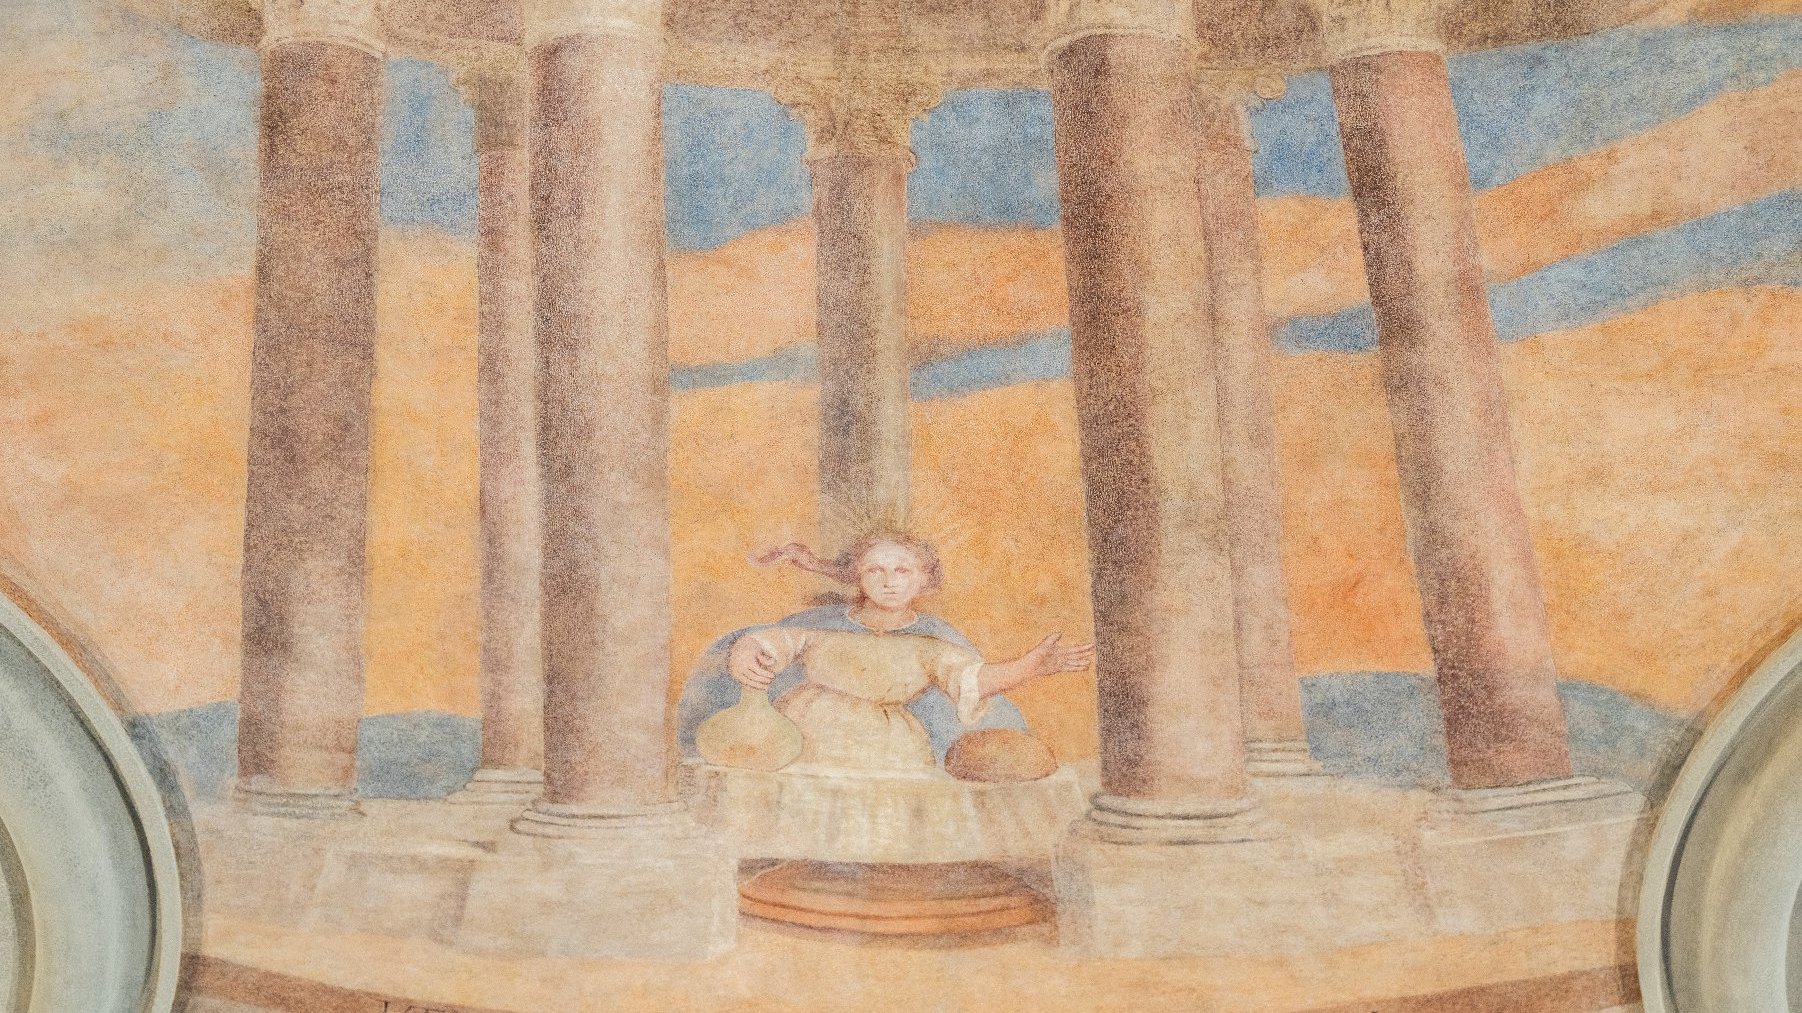 Galeria zdjęć przedstawia barokowe freski i płaskorzeźby na suficie Sali Sesyjnej UMP.